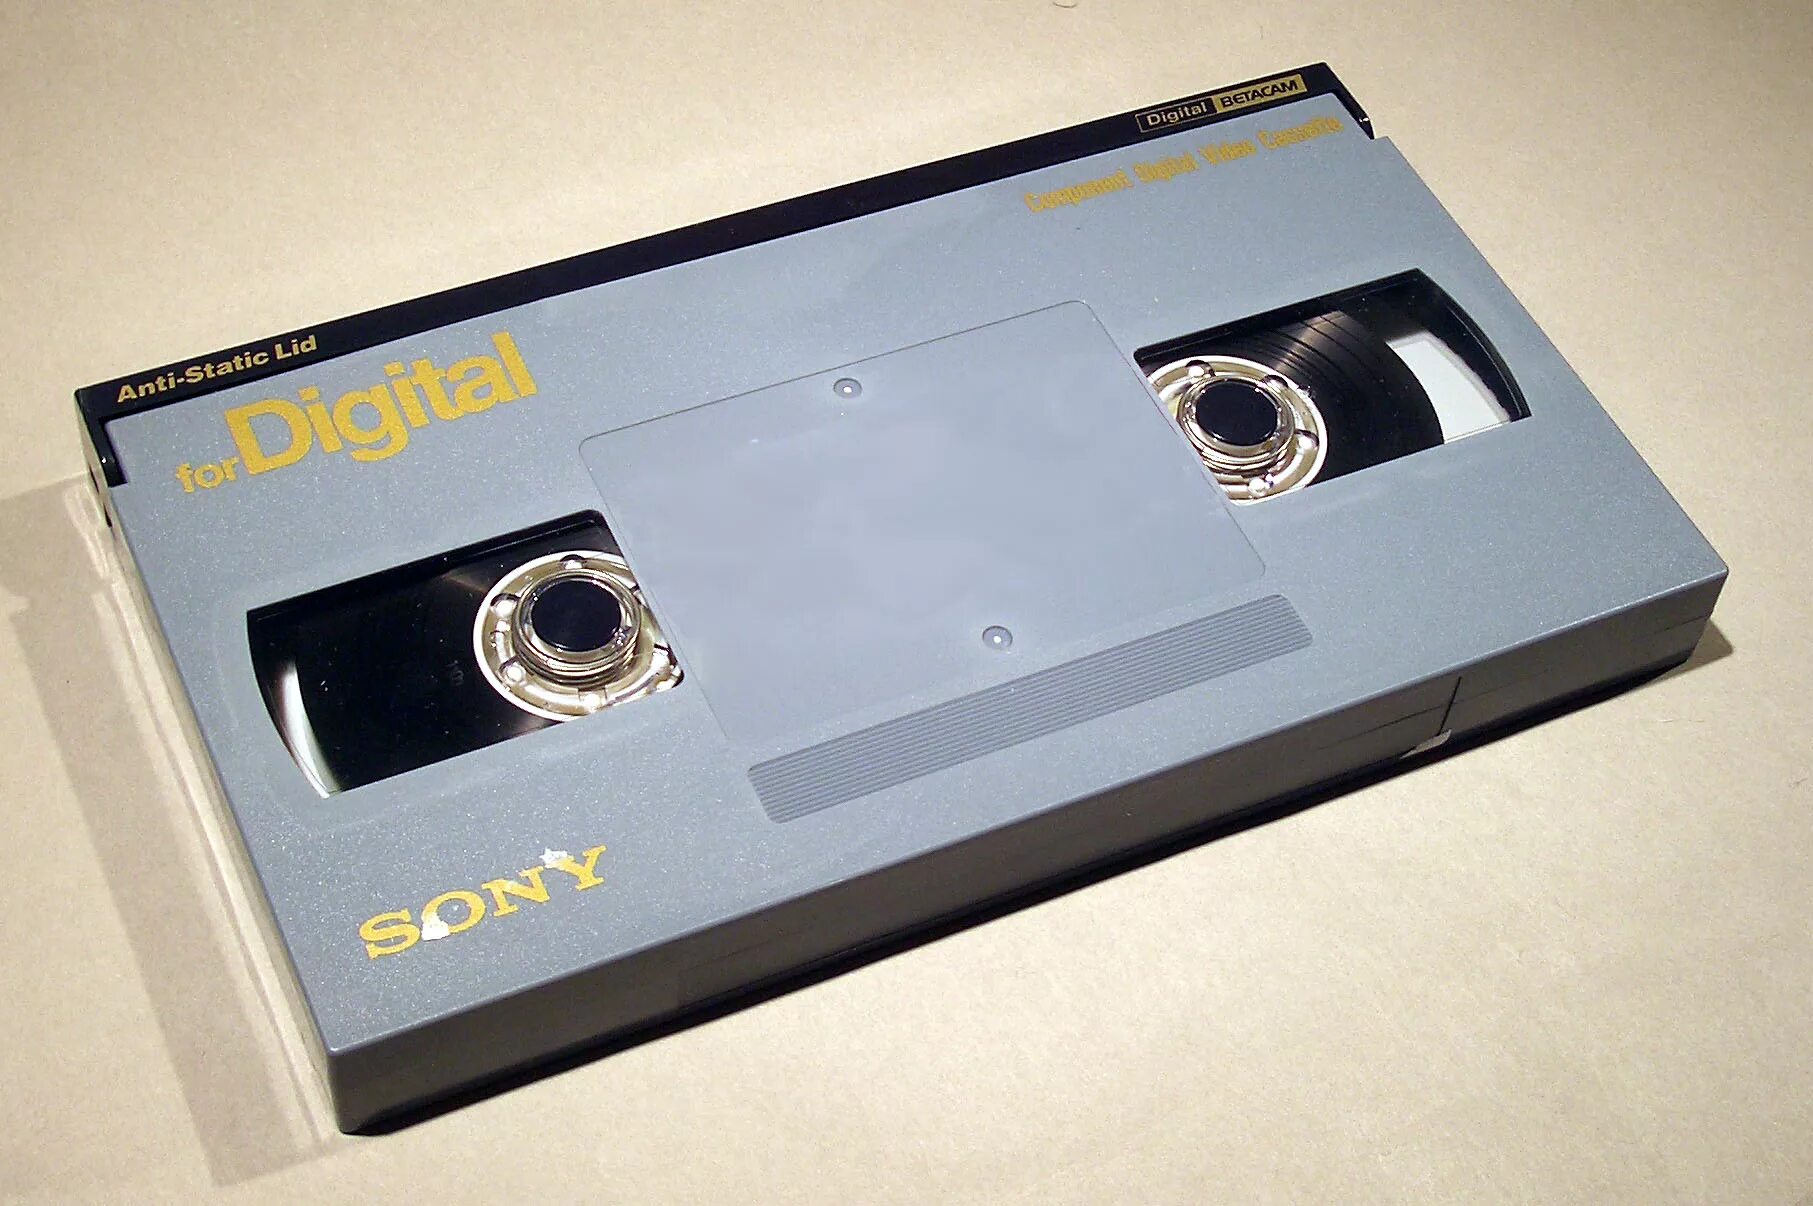 Цифровая кассета. Betacam SP кассеты. Digital Betacam кассета. Betacam и VHS кассеты. Кассета Betacam 180 минут.